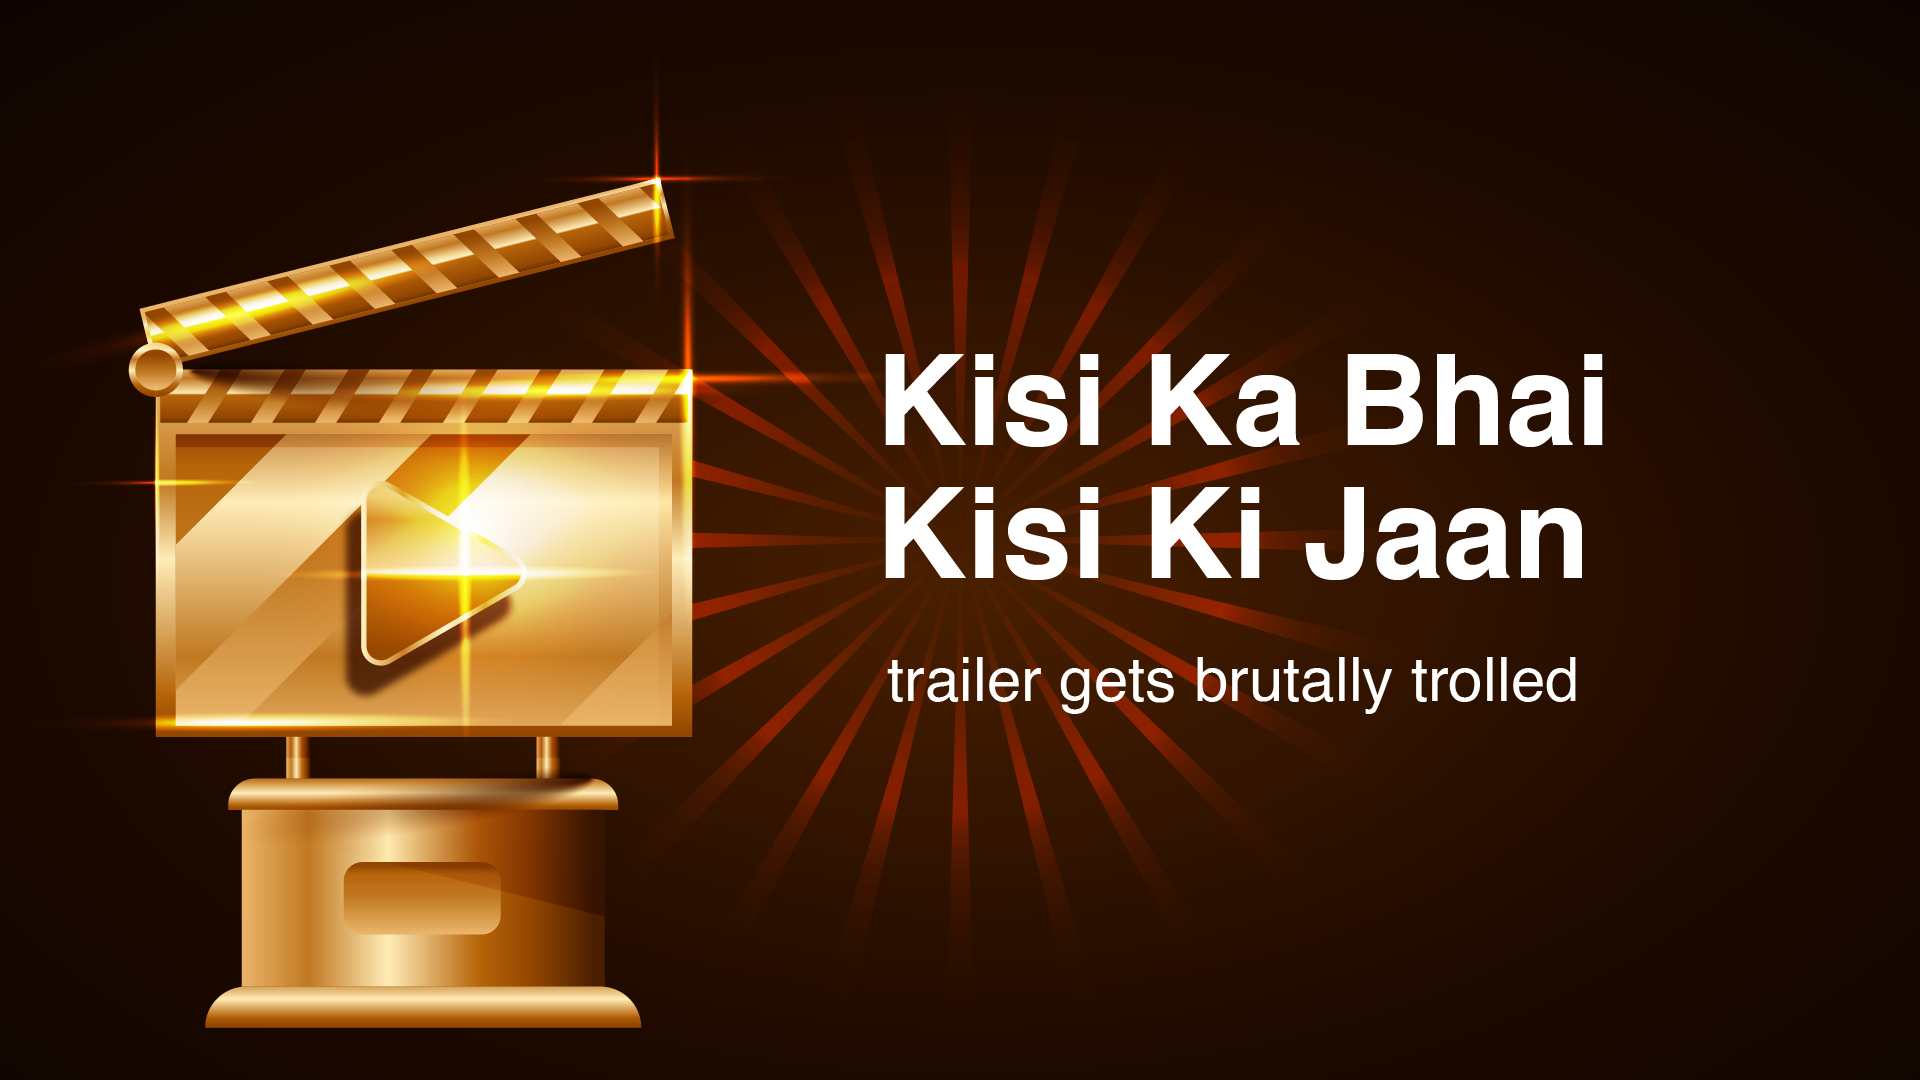 Kisi Ka Bhai Kisi Ki Jaan, salman khan new movie, movie, Bollywood, Bollywood movie